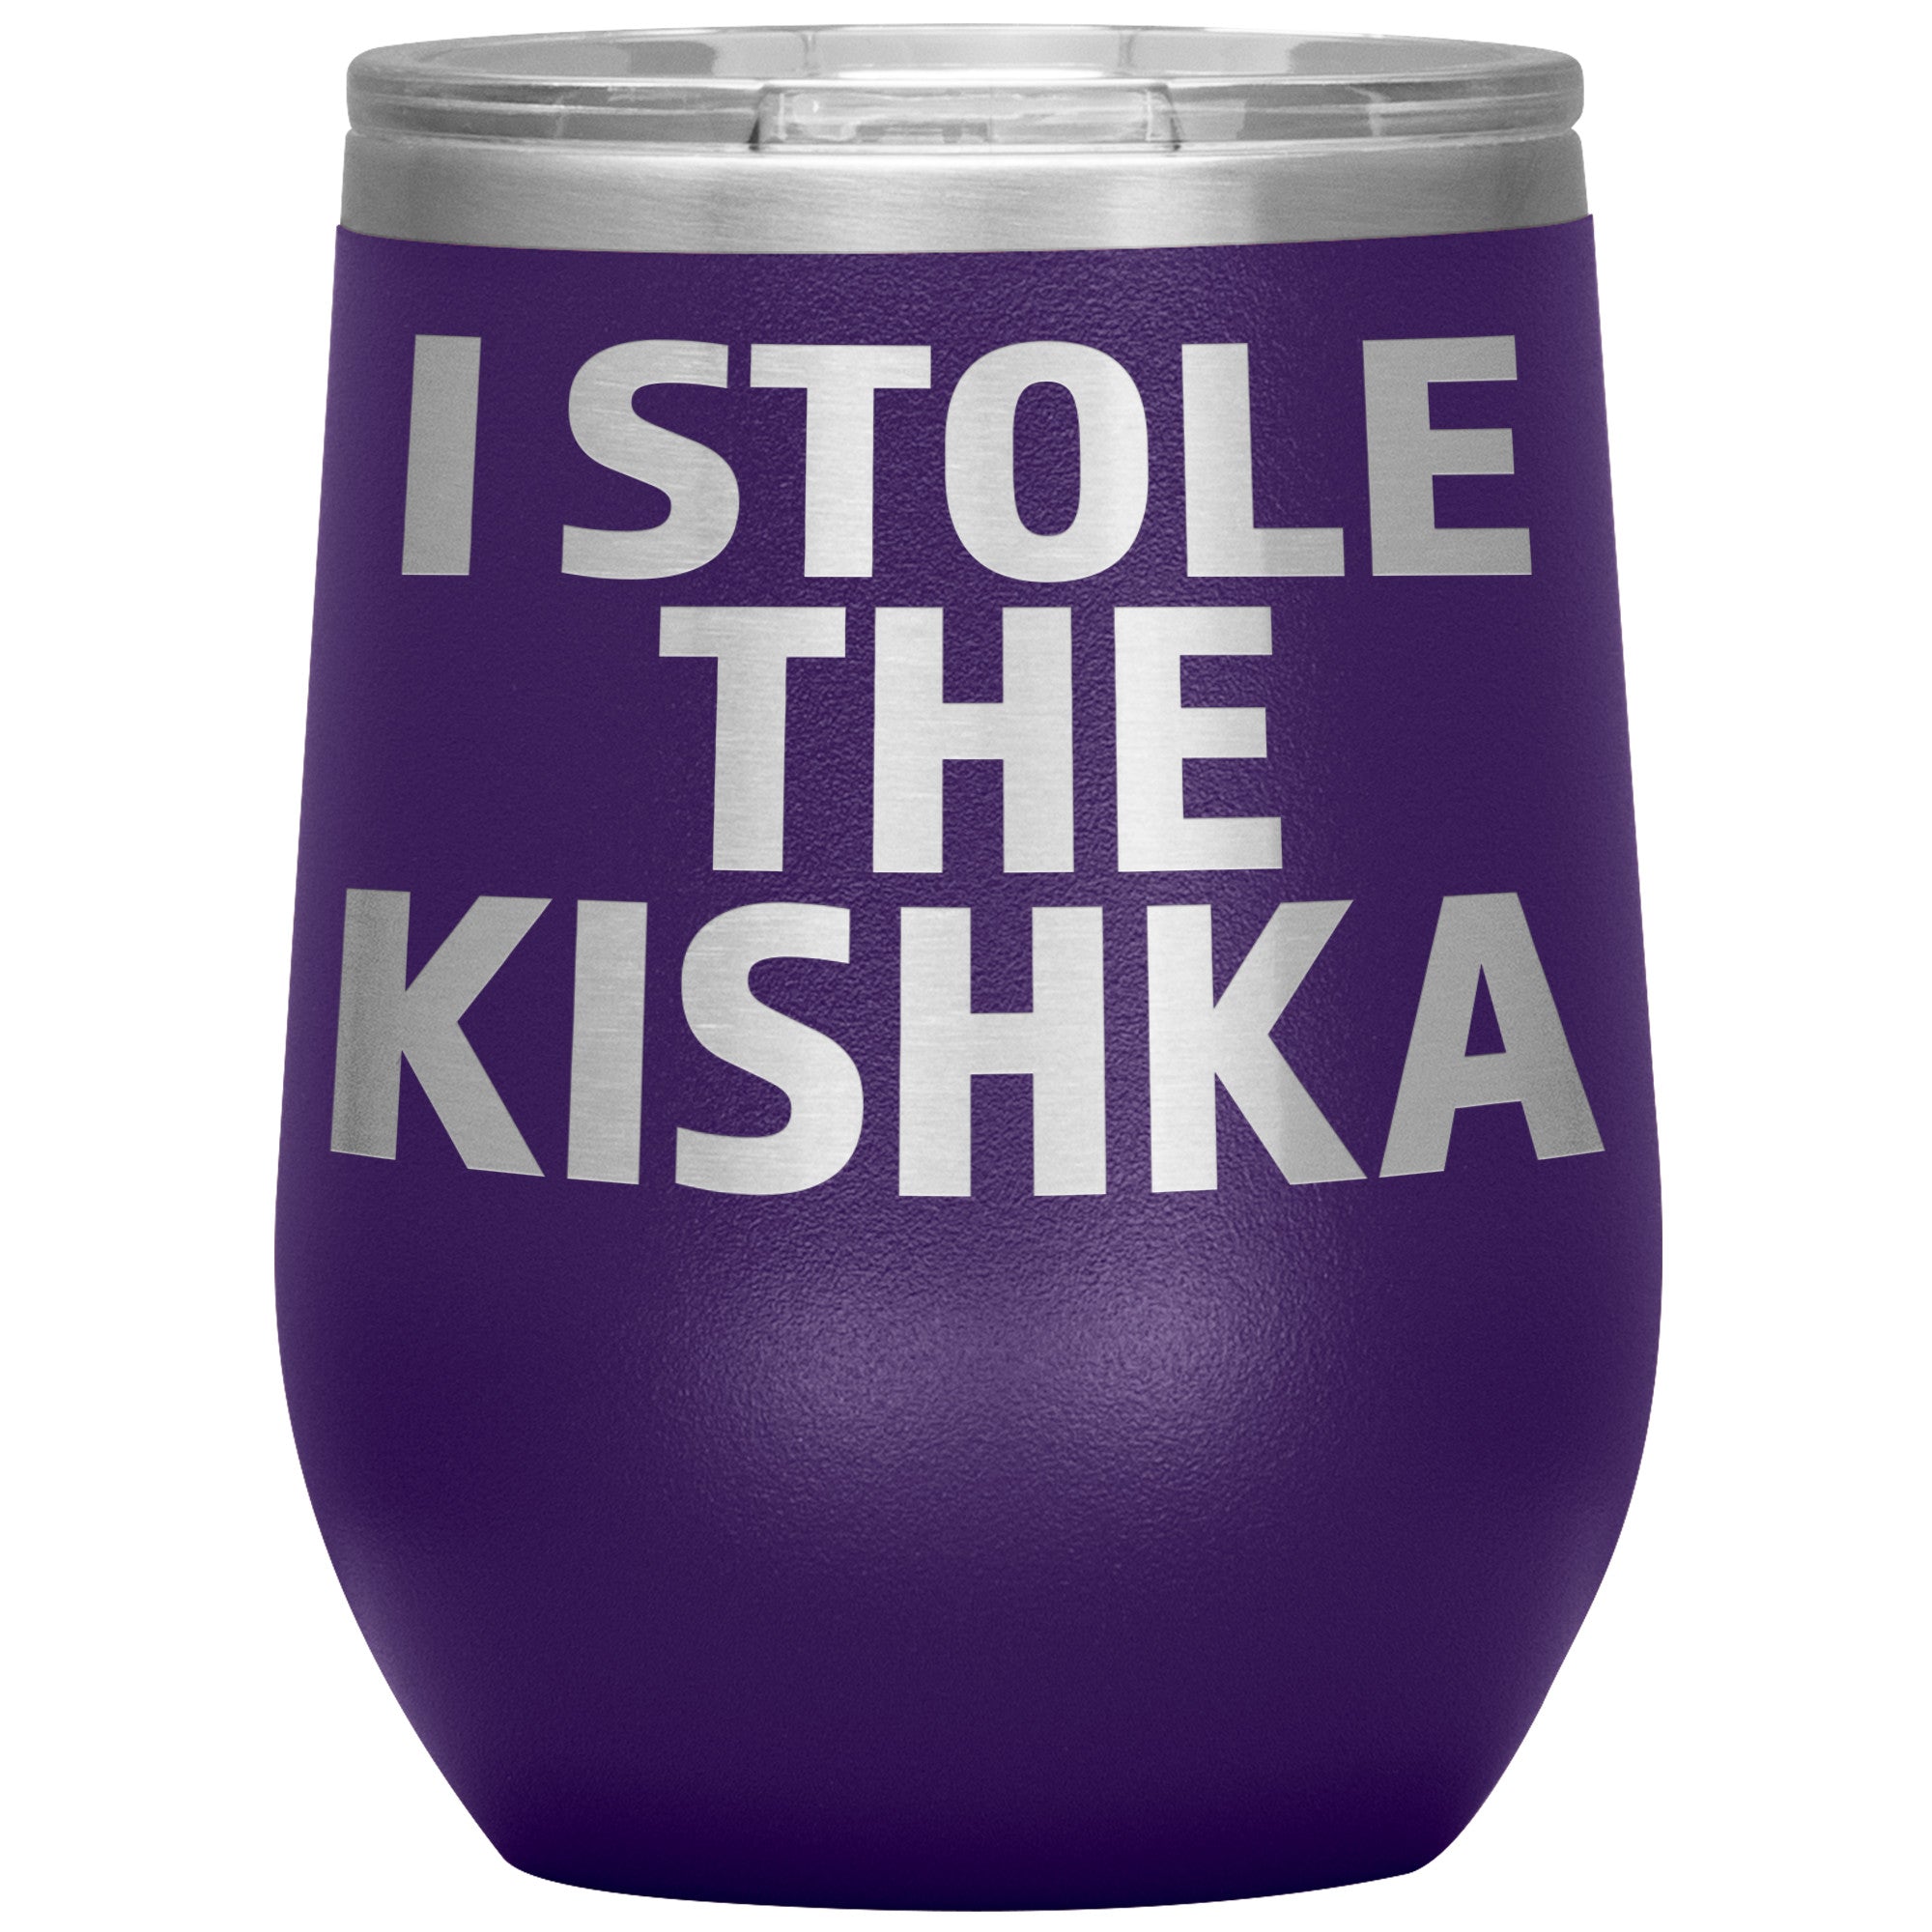 I Stole The Kishka Insulated Wine Tumbler Tumblers teelaunch Purple  